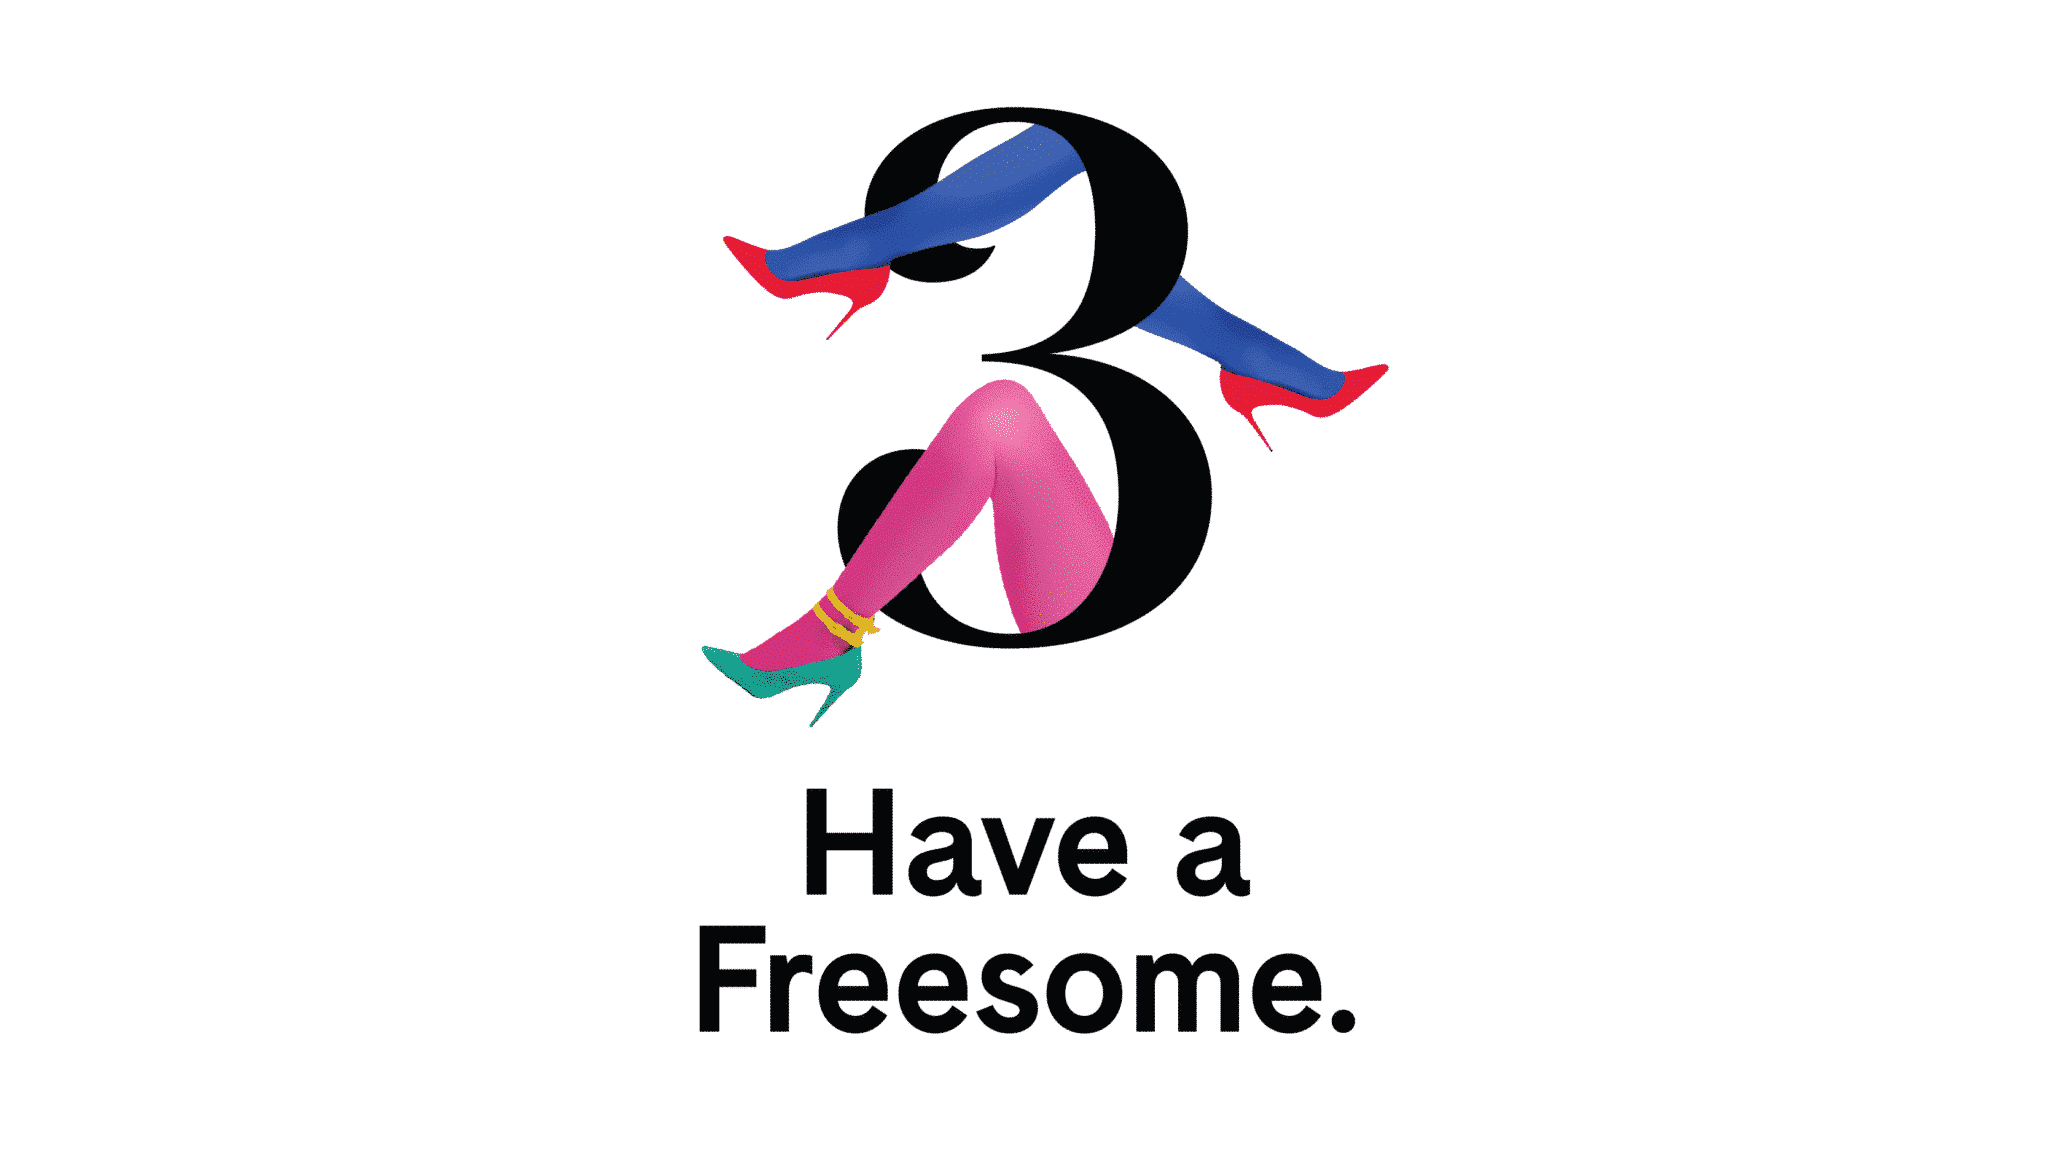 Freesome Campaign